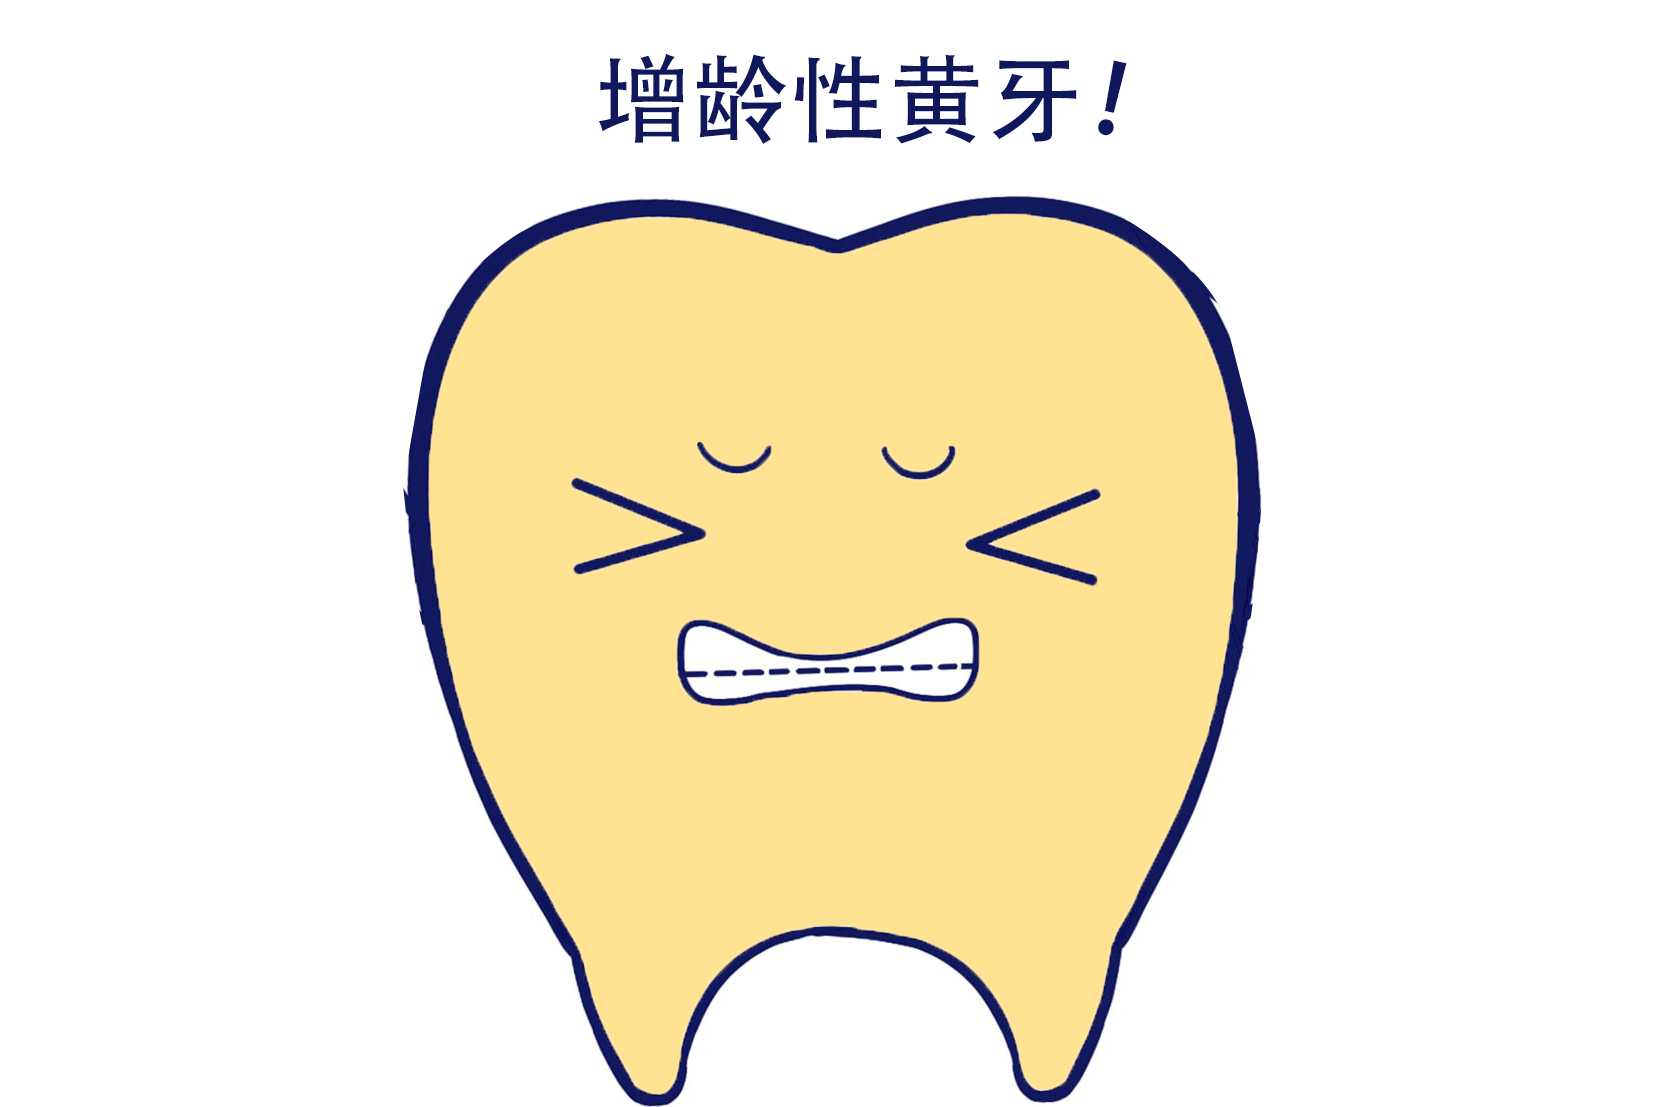 随着年龄的增大,牙齿会越来越黄是真的吗?